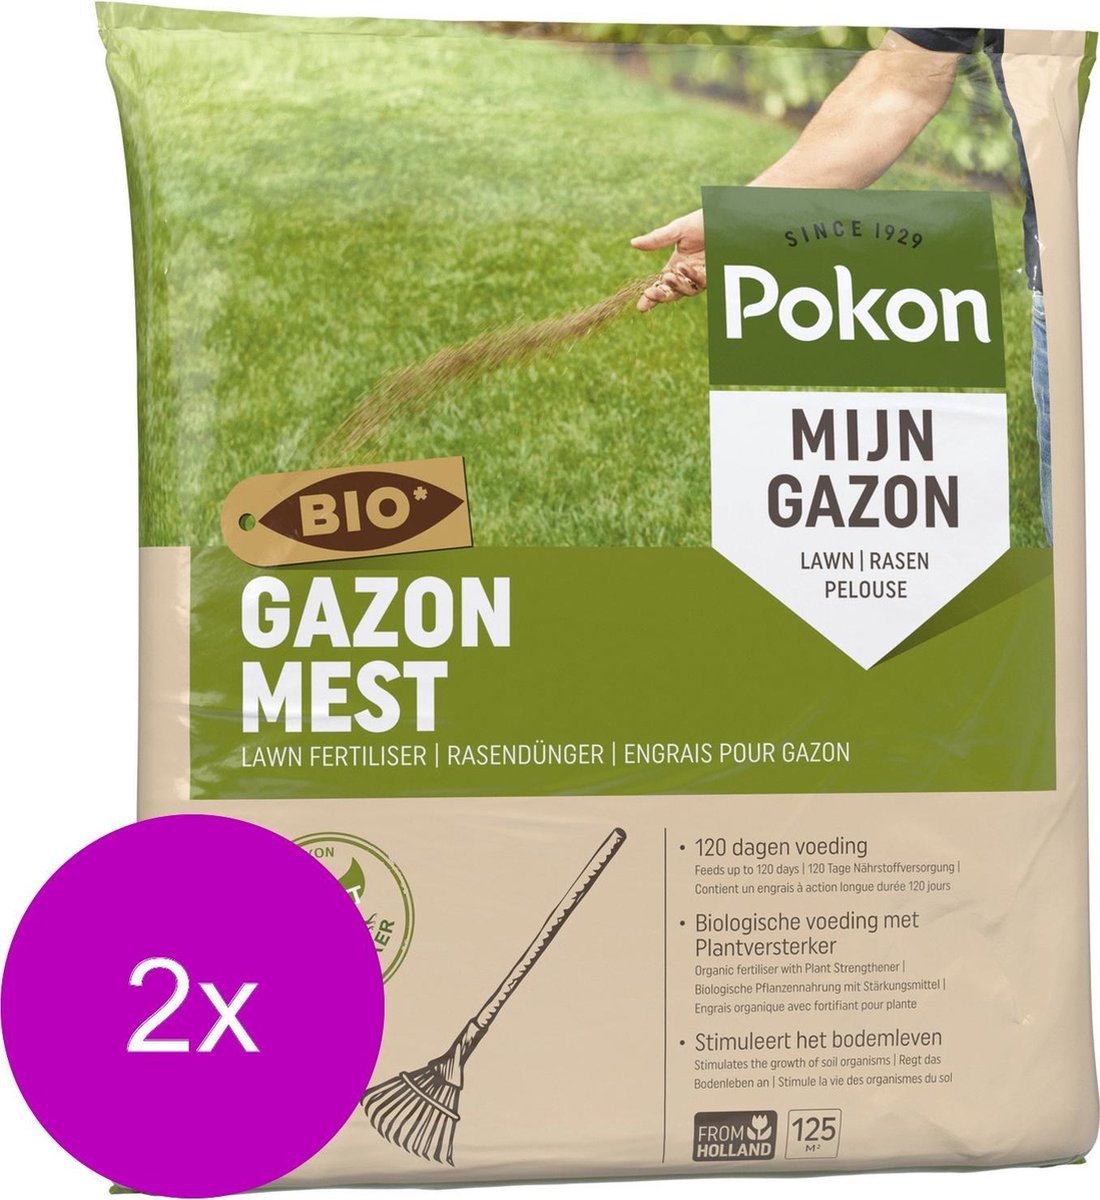 Pokon Bio Gazonmest - 2 x 8,4kg - Mest - Geschikt voor 2 x 125m² - 120 dagen biologische voeding - Voordeelverpakking